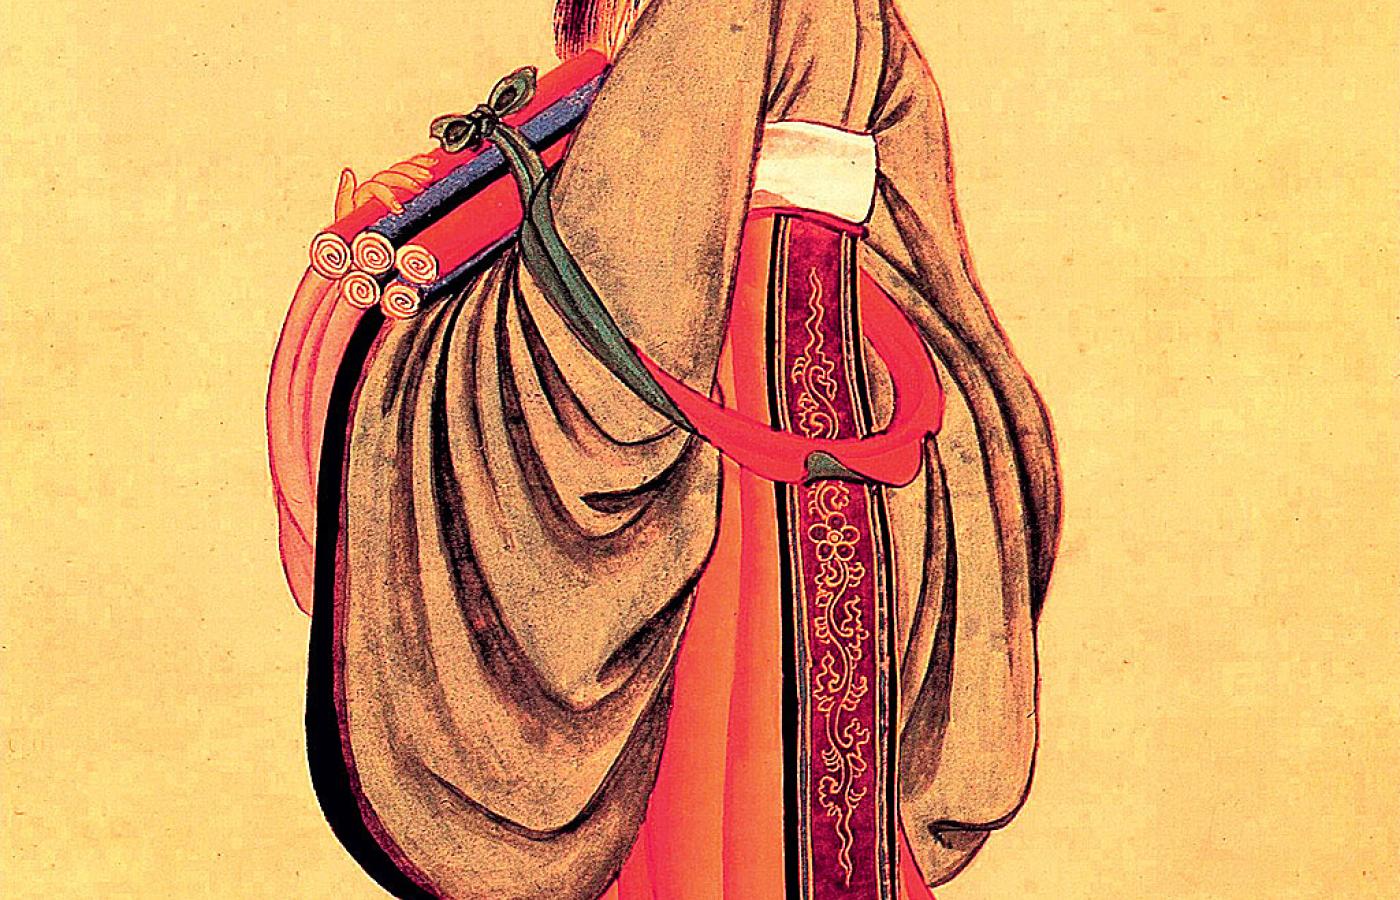 Konfucjusz (551-479 p.n.e.), twórca jednej z najważniejszych tradycji Chin i całej Azji Wschodniej. Gwasz z czasów dynastii Qing, XVII w.